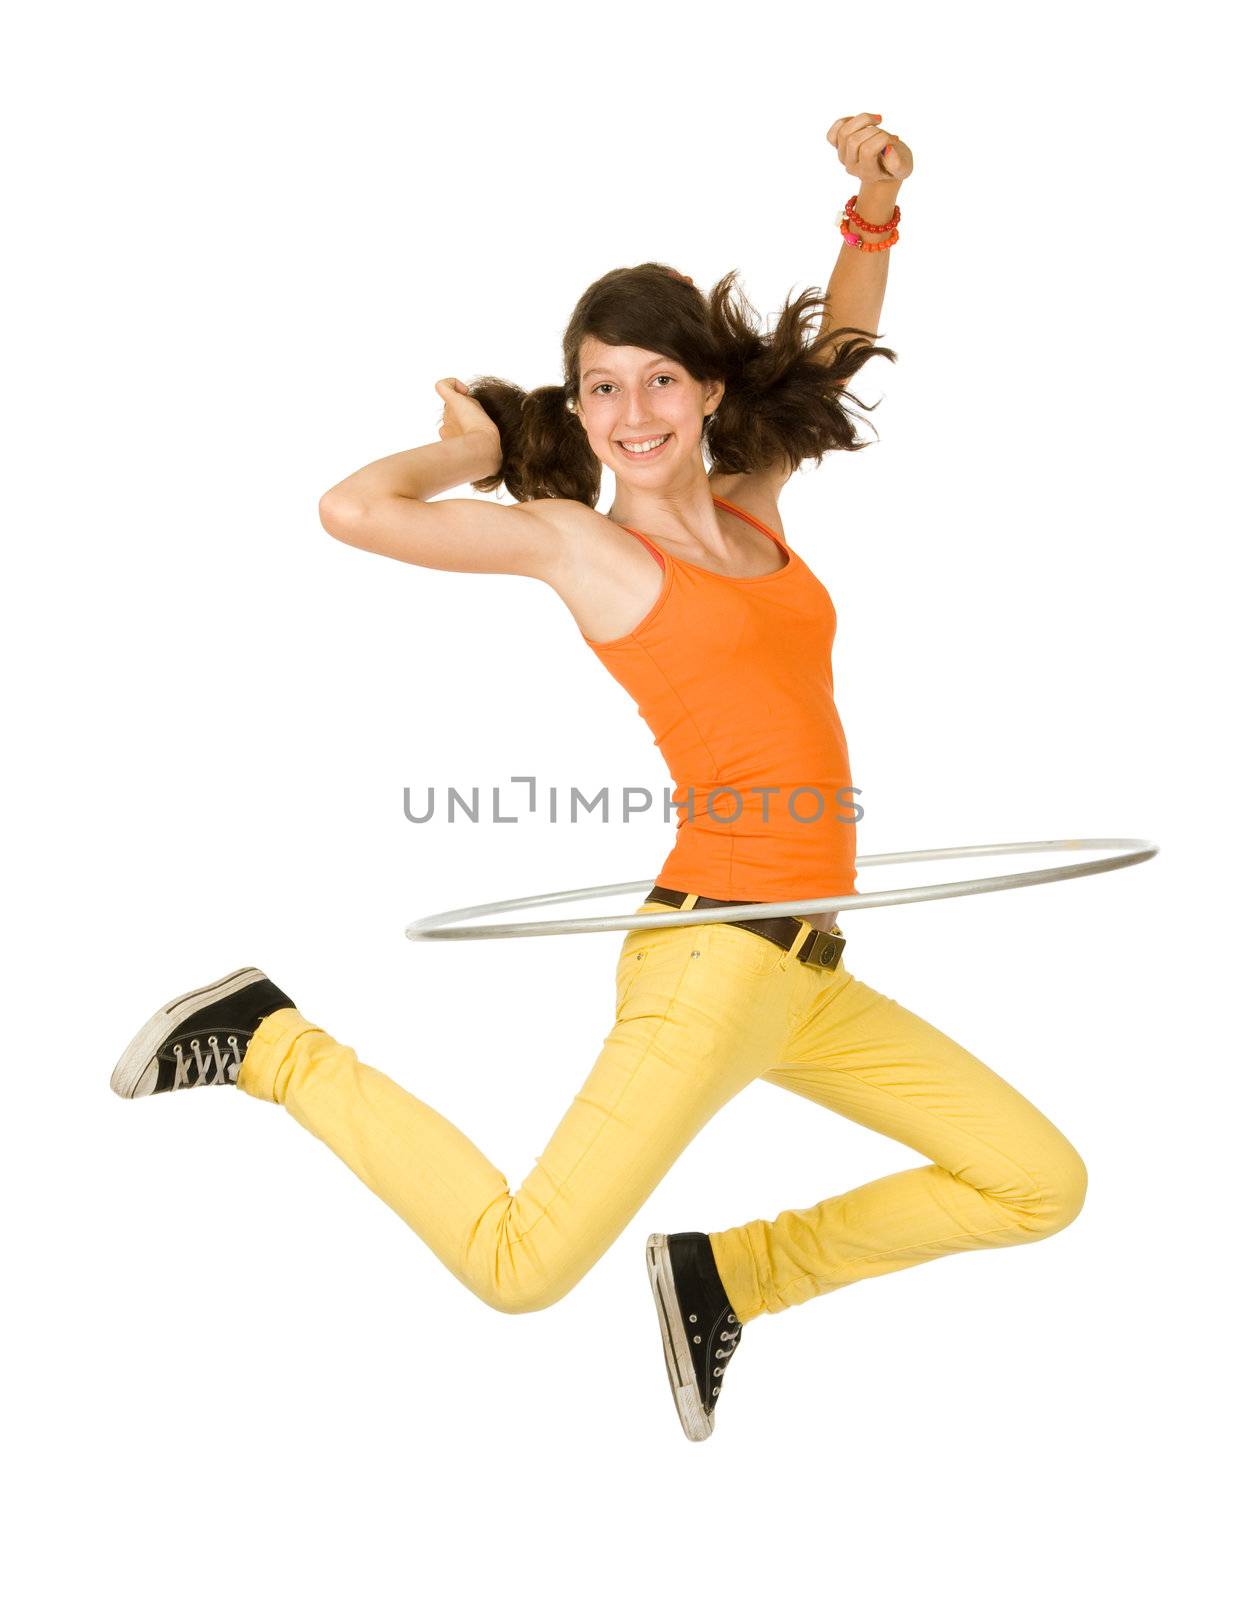 Joyful teenager girl with hula hoop on white background